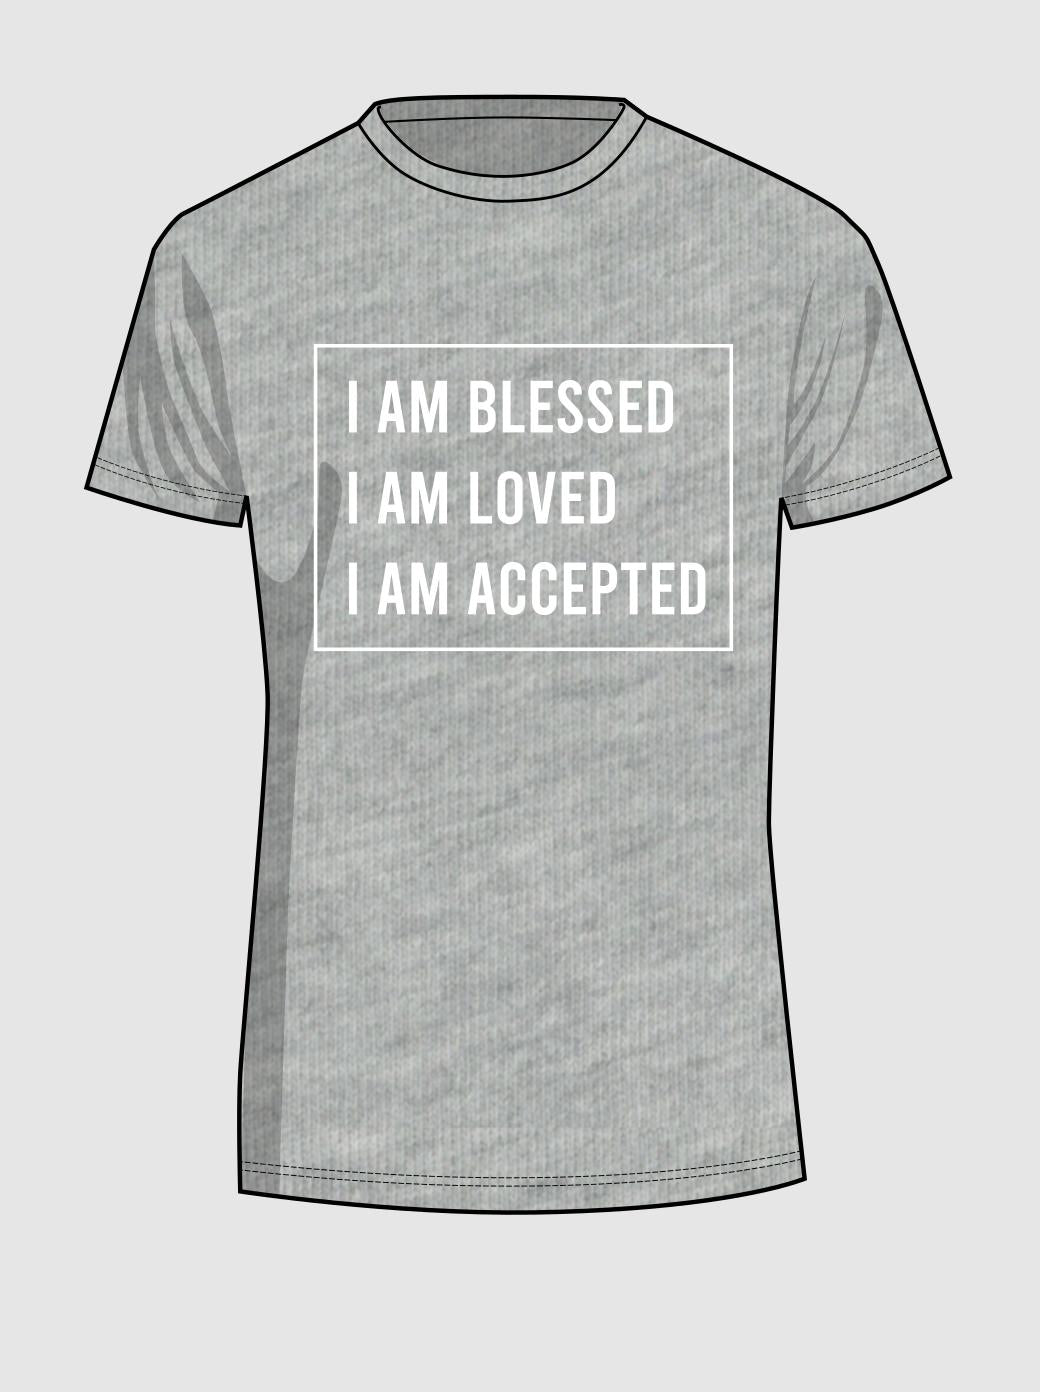 Männer T-Shirt - I AM BLESSED